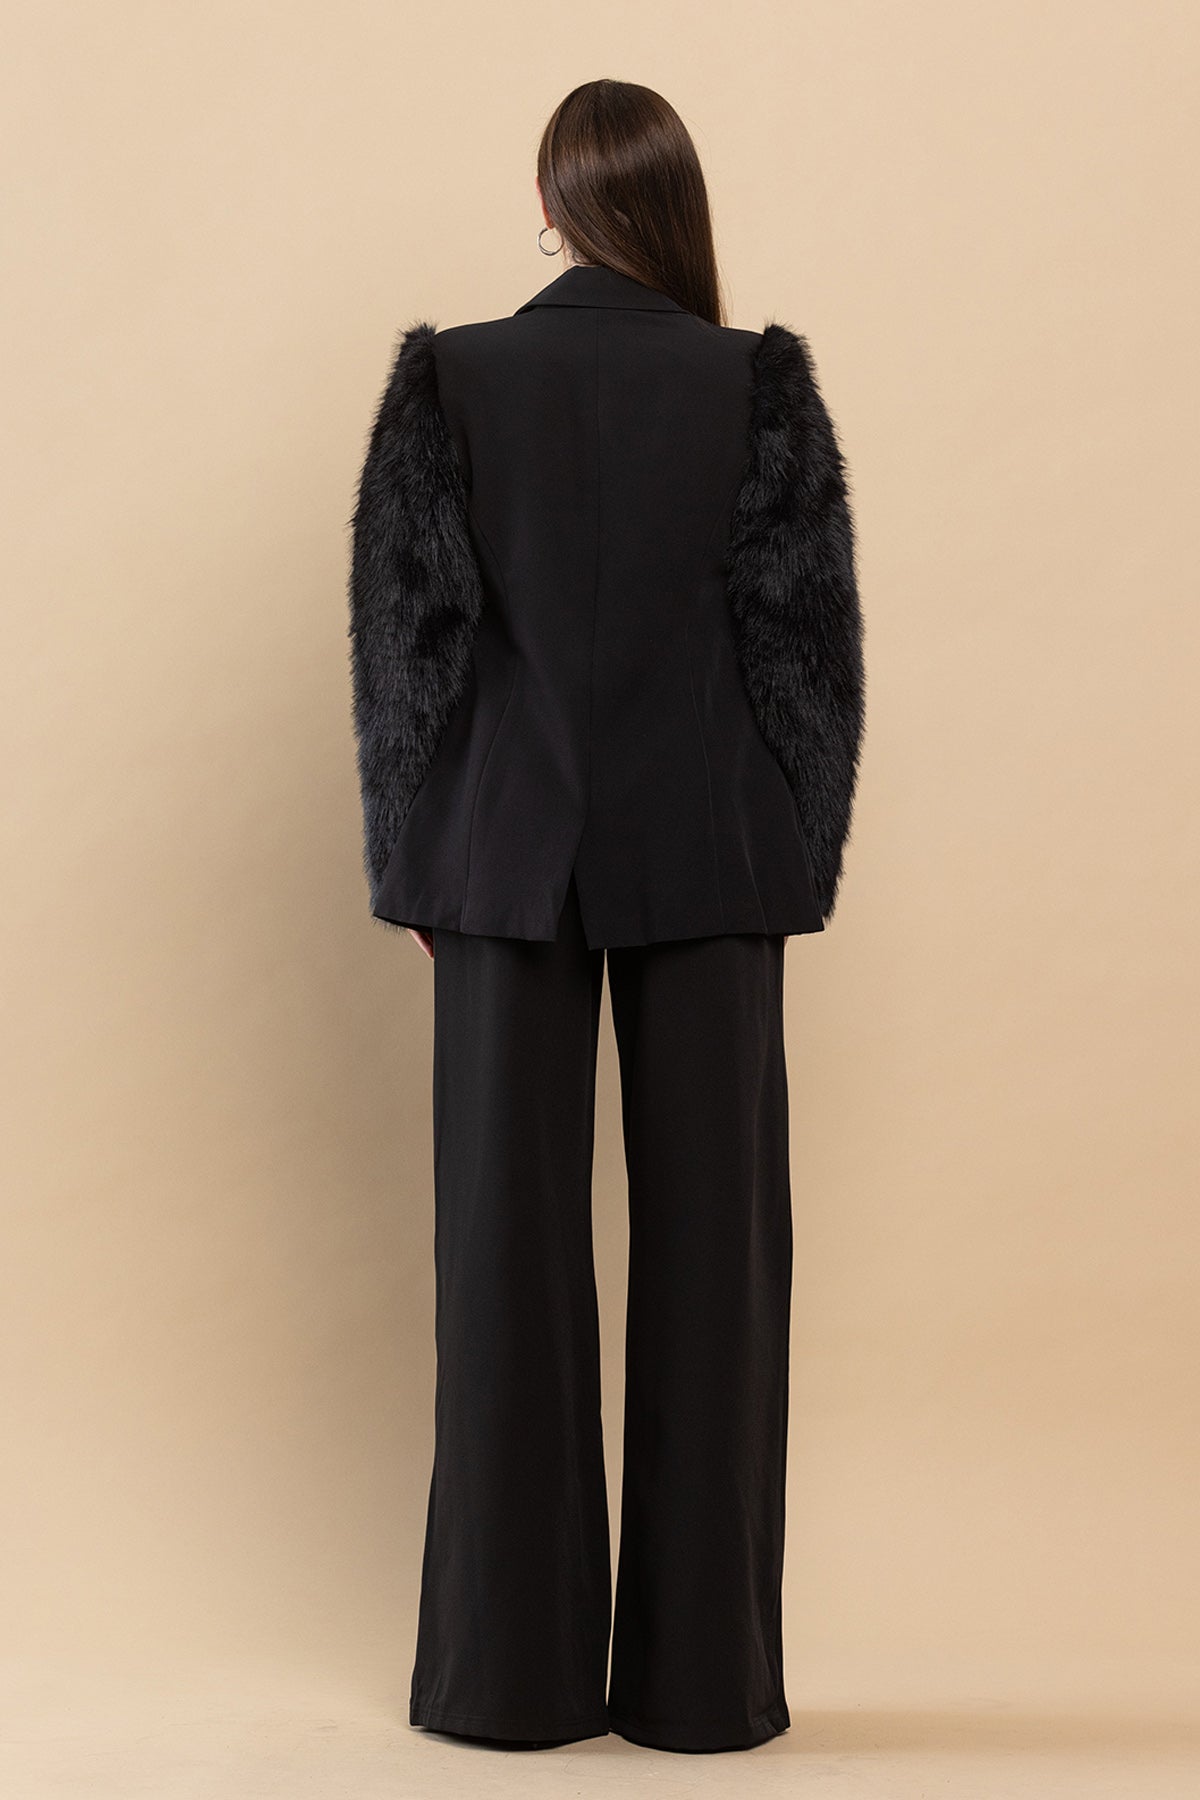 Pant Suit Faux Fur Sleeves Blazer Pant Set Black